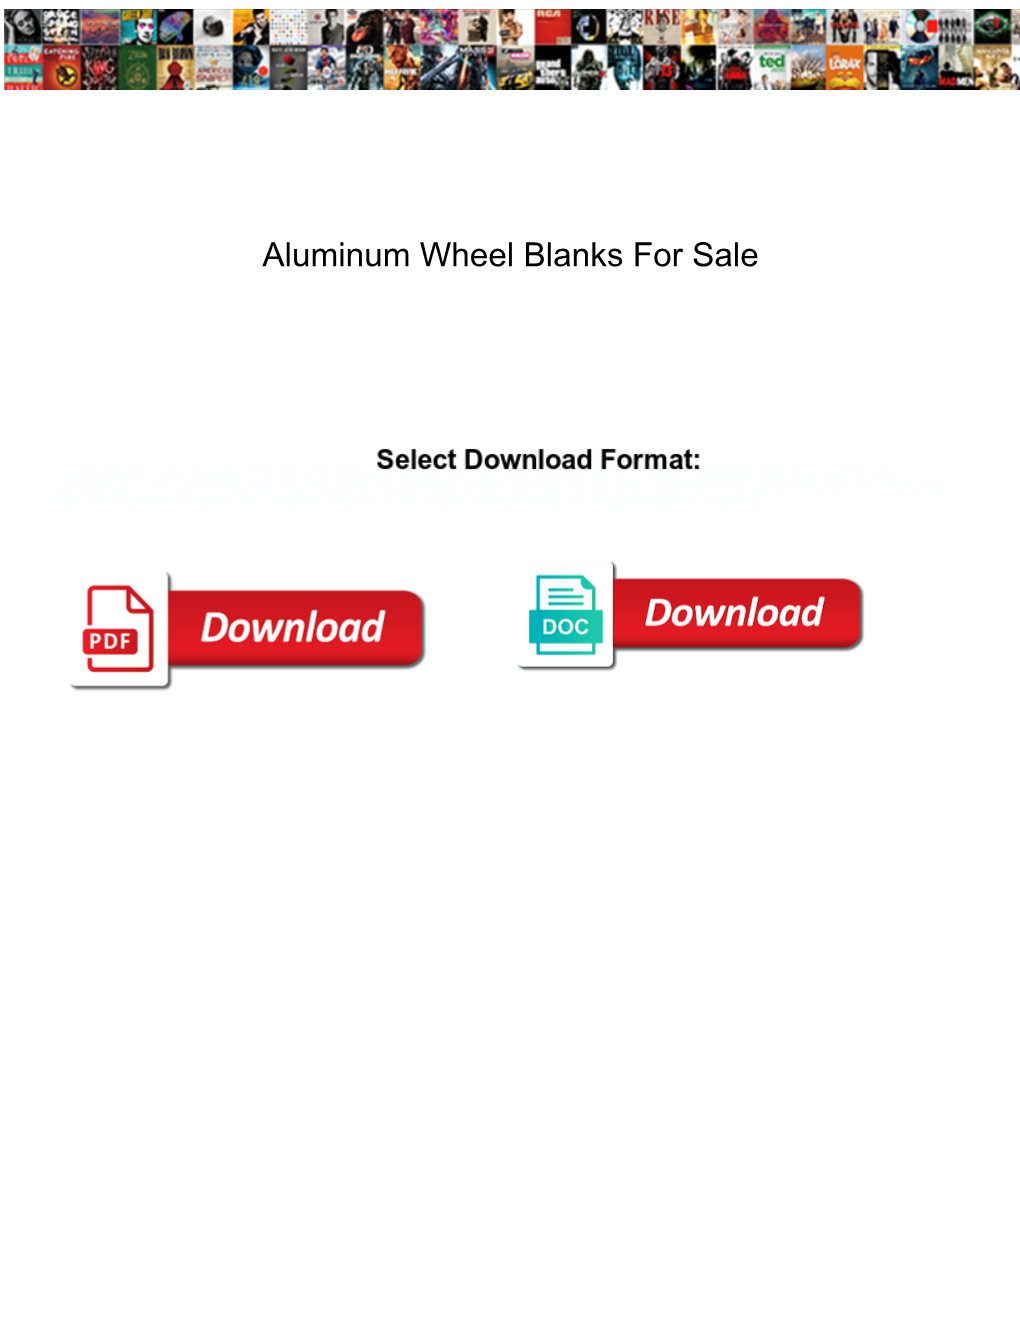 Aluminum Wheel Blanks for Sale